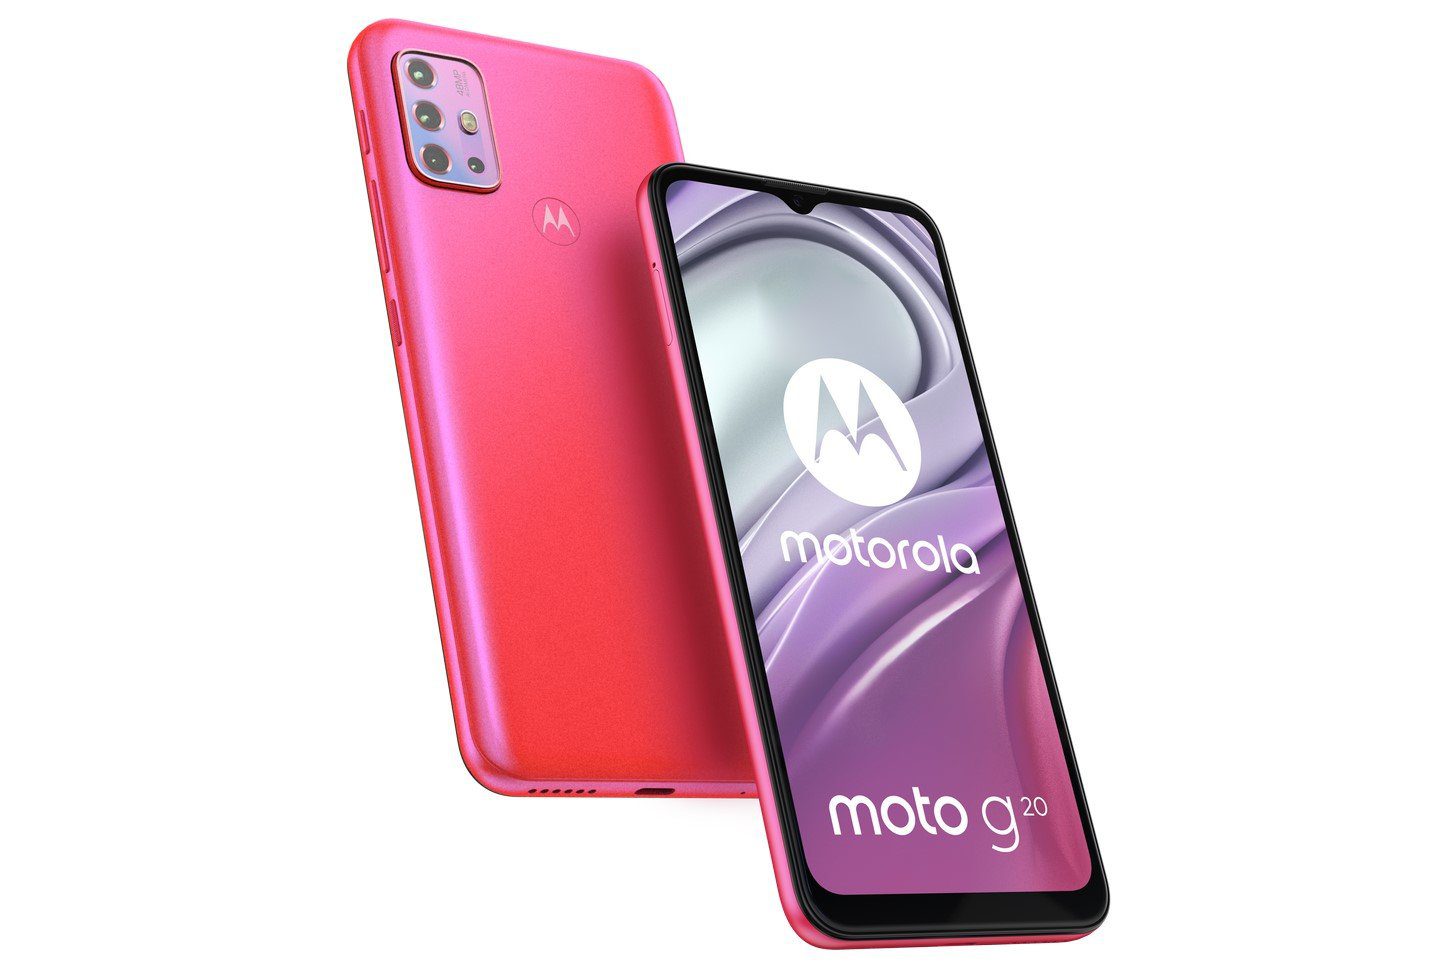 Motorola experimentiert mit Prozessoren. Das neue Moto G20 hat weder Snapdragon noch MediaTek bekommen 155